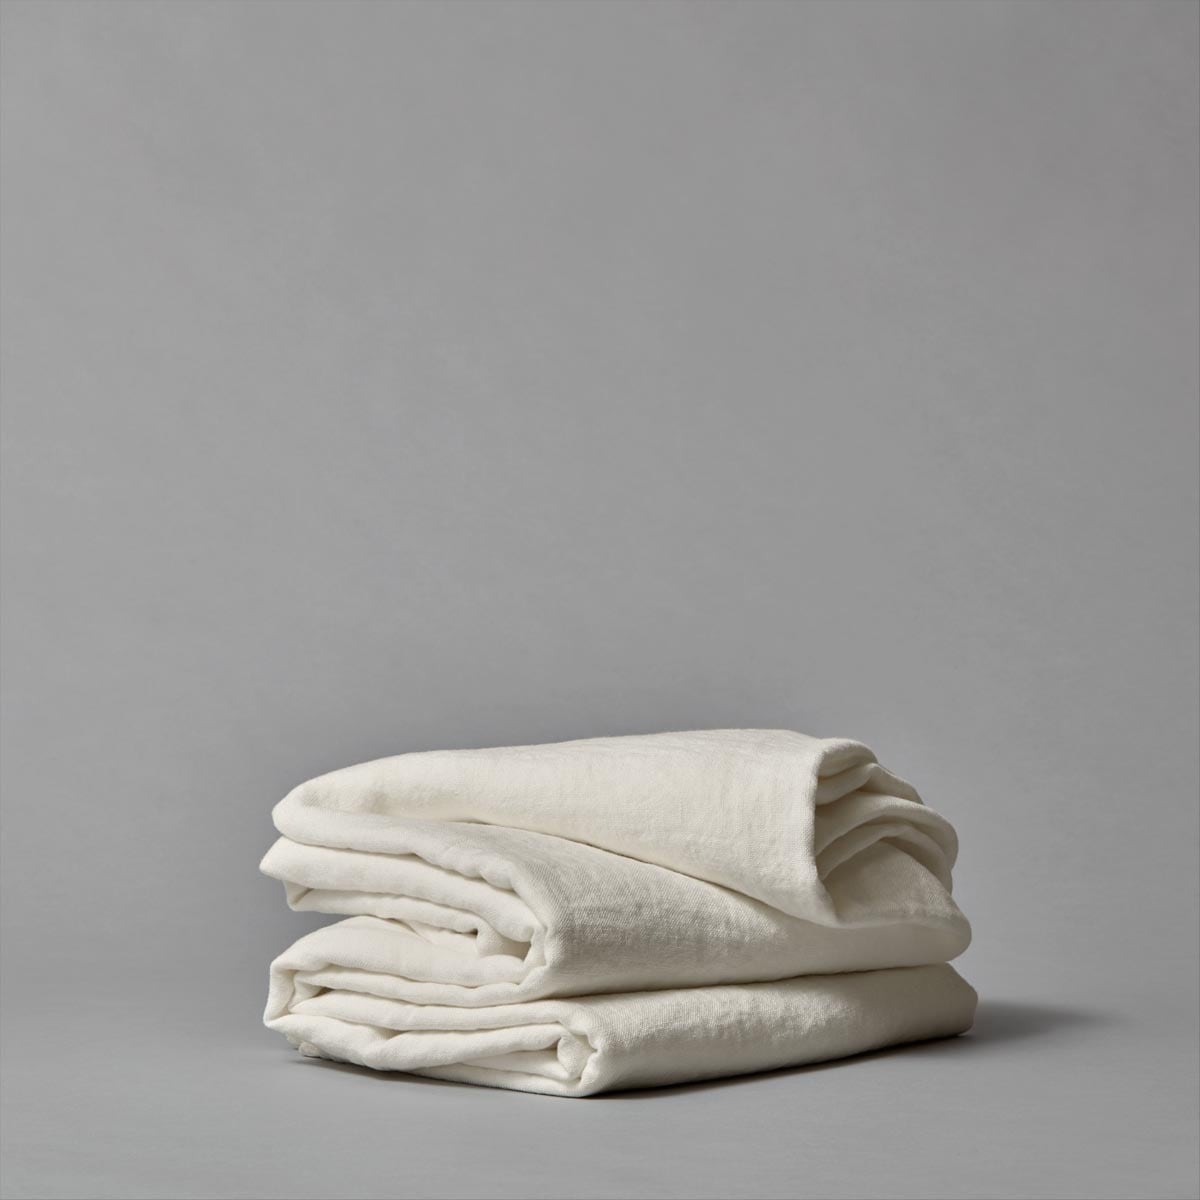 Coarse linen bedspread